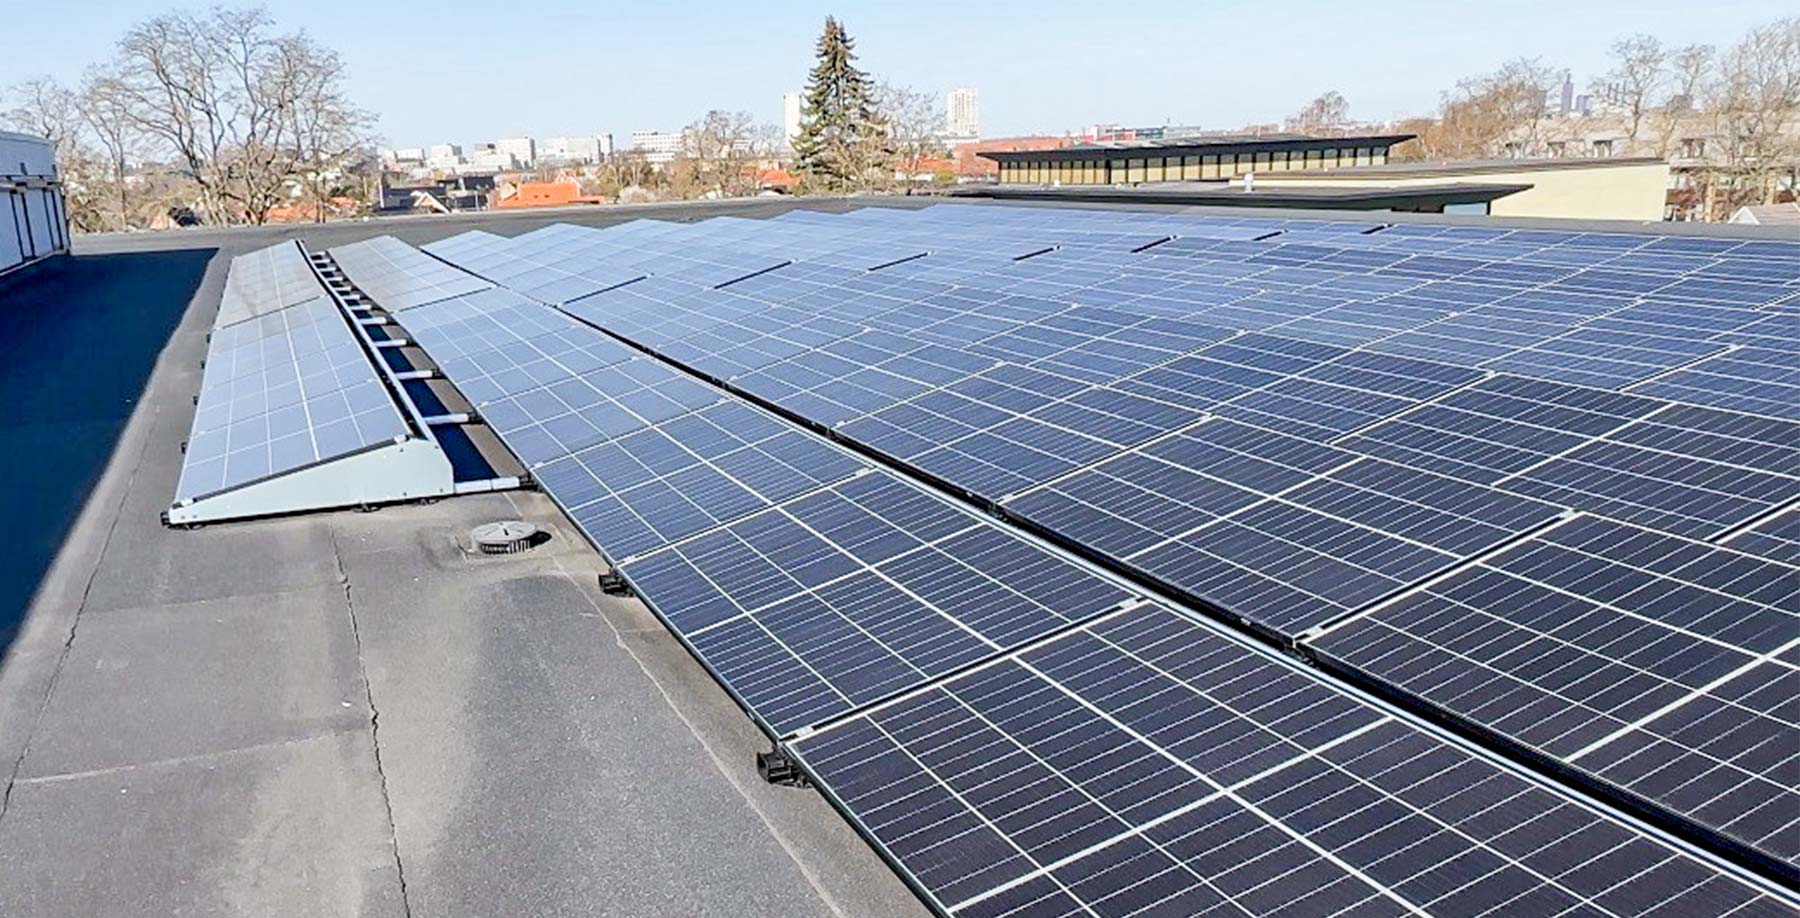 Solcellerne på taget af TG er nu taget i brug. De forventes i fremtiden at stå for produktion af cirka 25% af skolens strømforbrug.